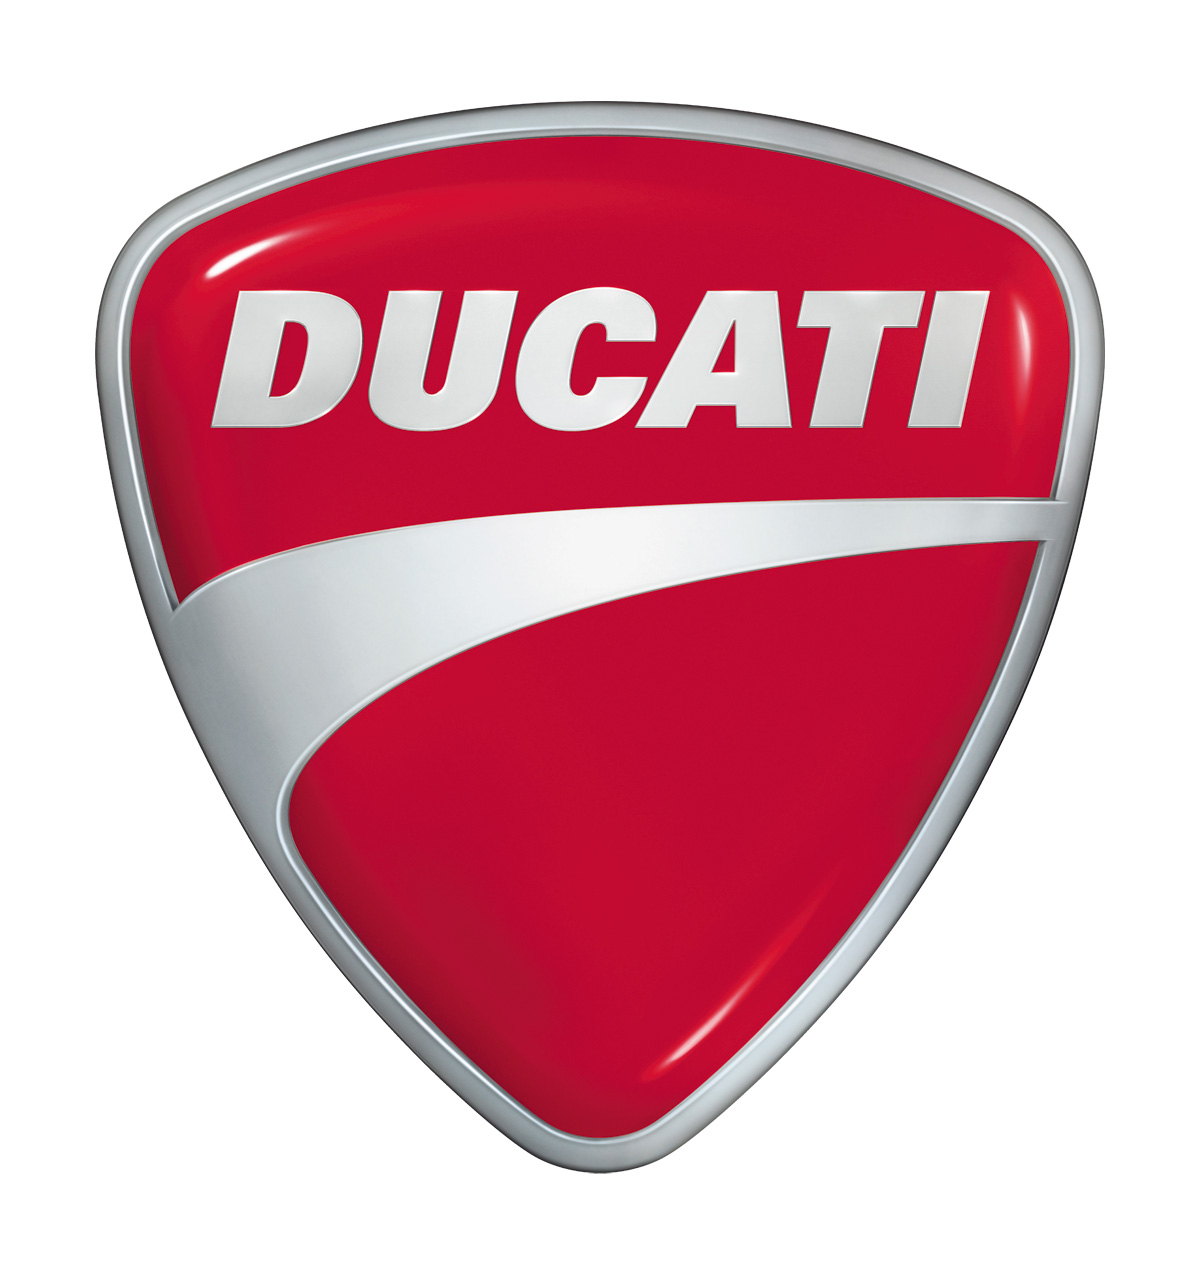 Ducati_Logo